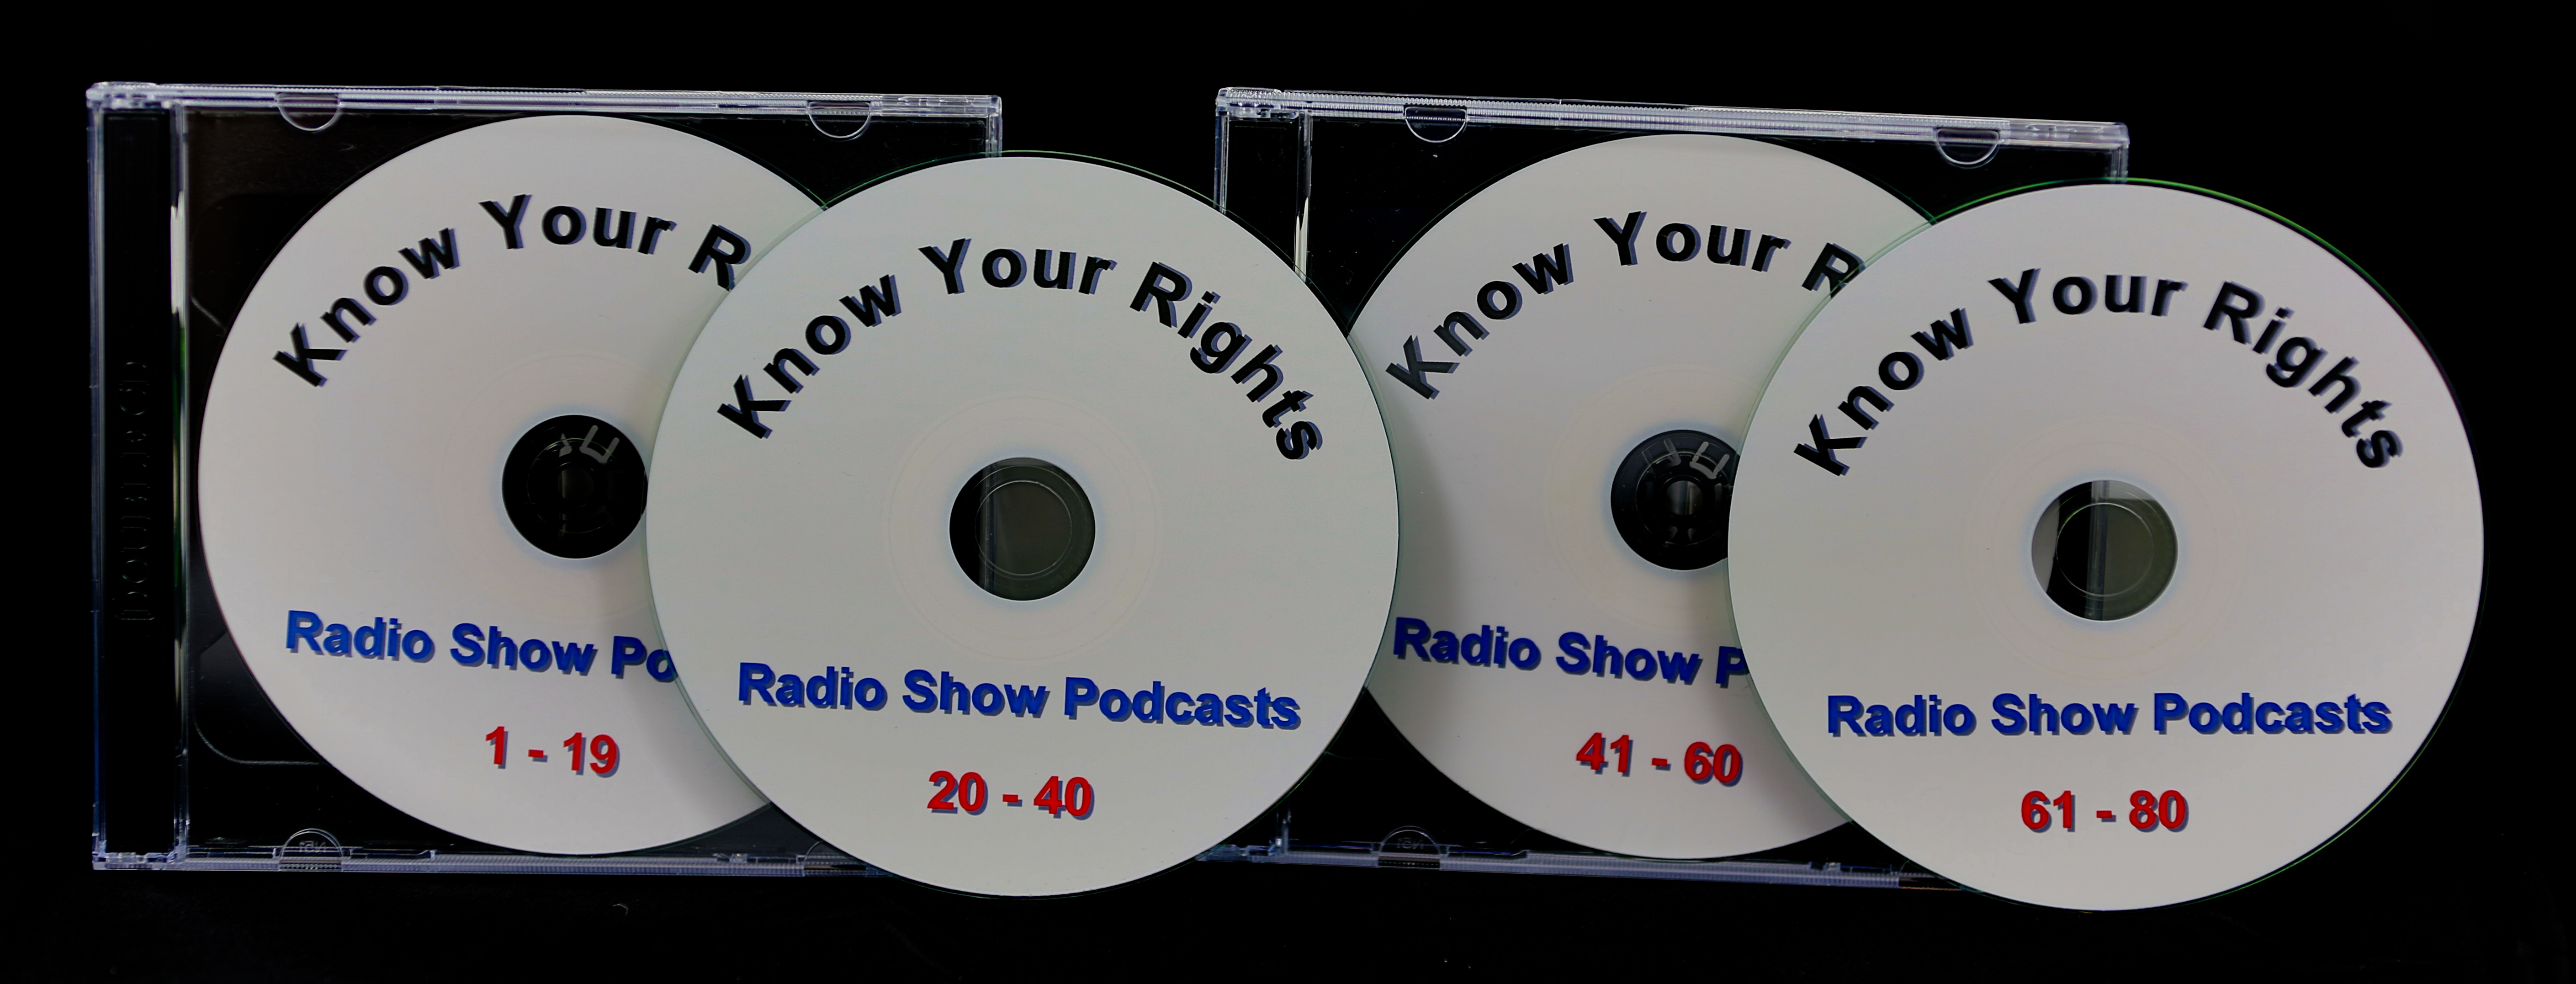 KYR Podcast CDs